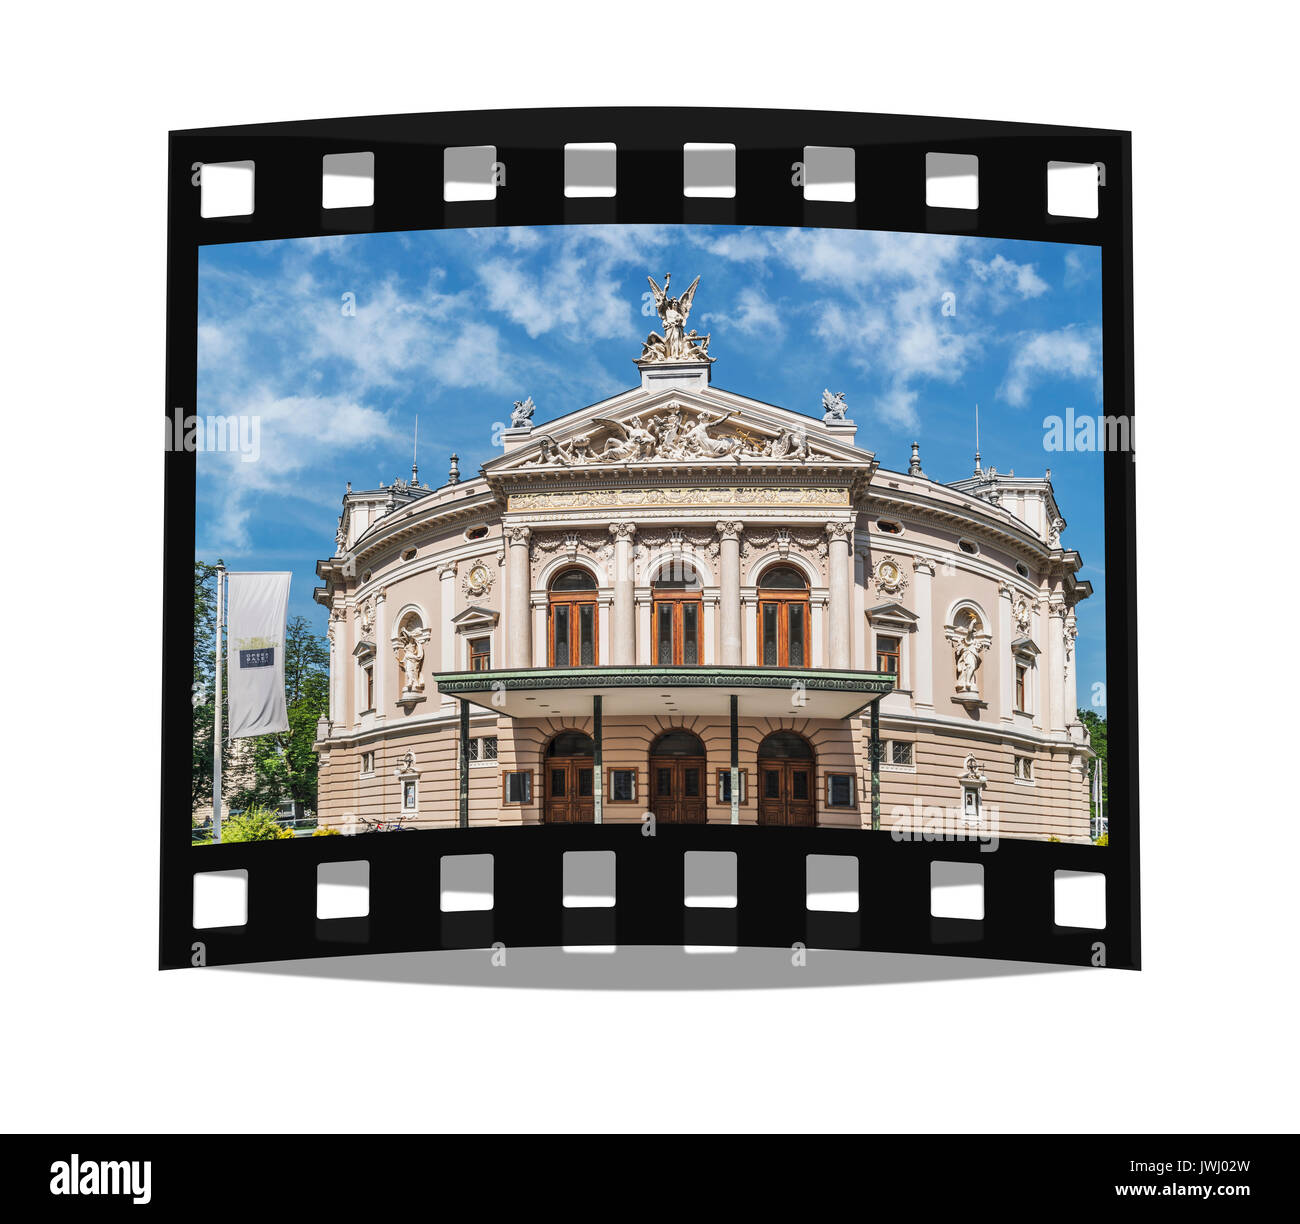 Die Oper von Ljubljana ist auf der Straße Zupanciceva ulica 1 befindet. Das Gebäude wurde im Jahr 1892, Ljubljana, Slowenien, Europa Stockfoto